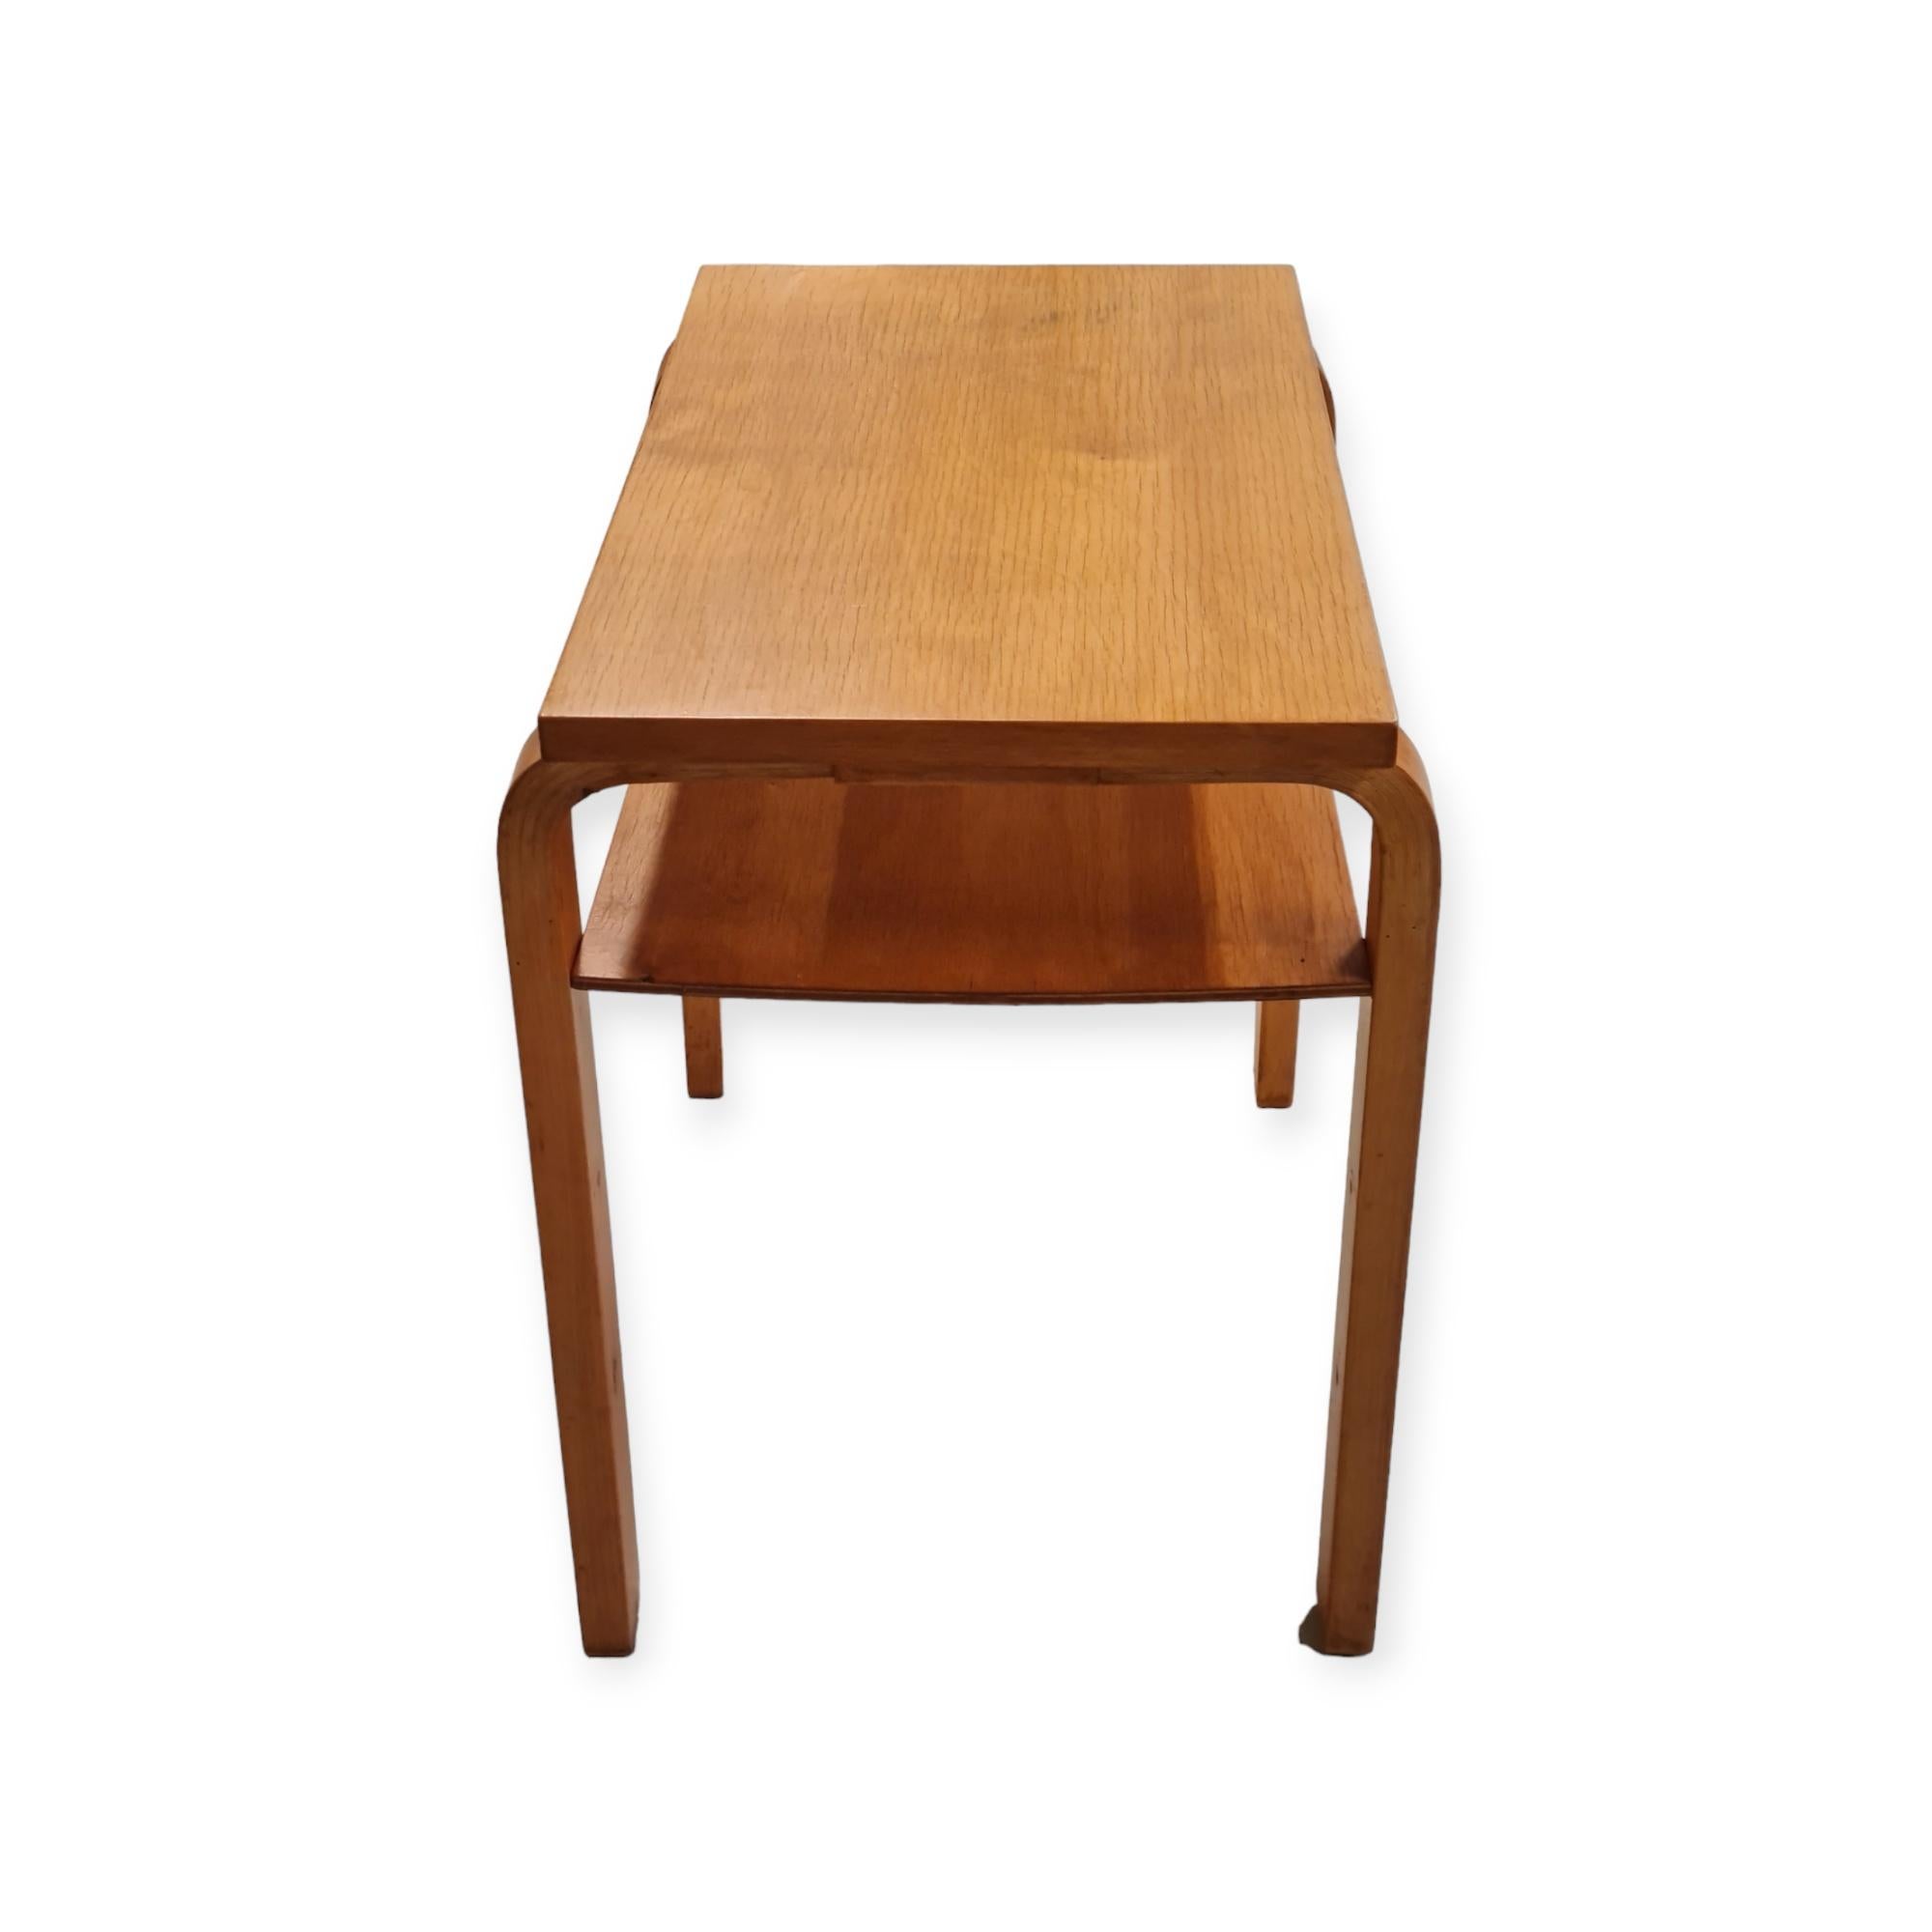 Finnish Alvar Aalto Side Table Model A 86 for Artek, 1930s